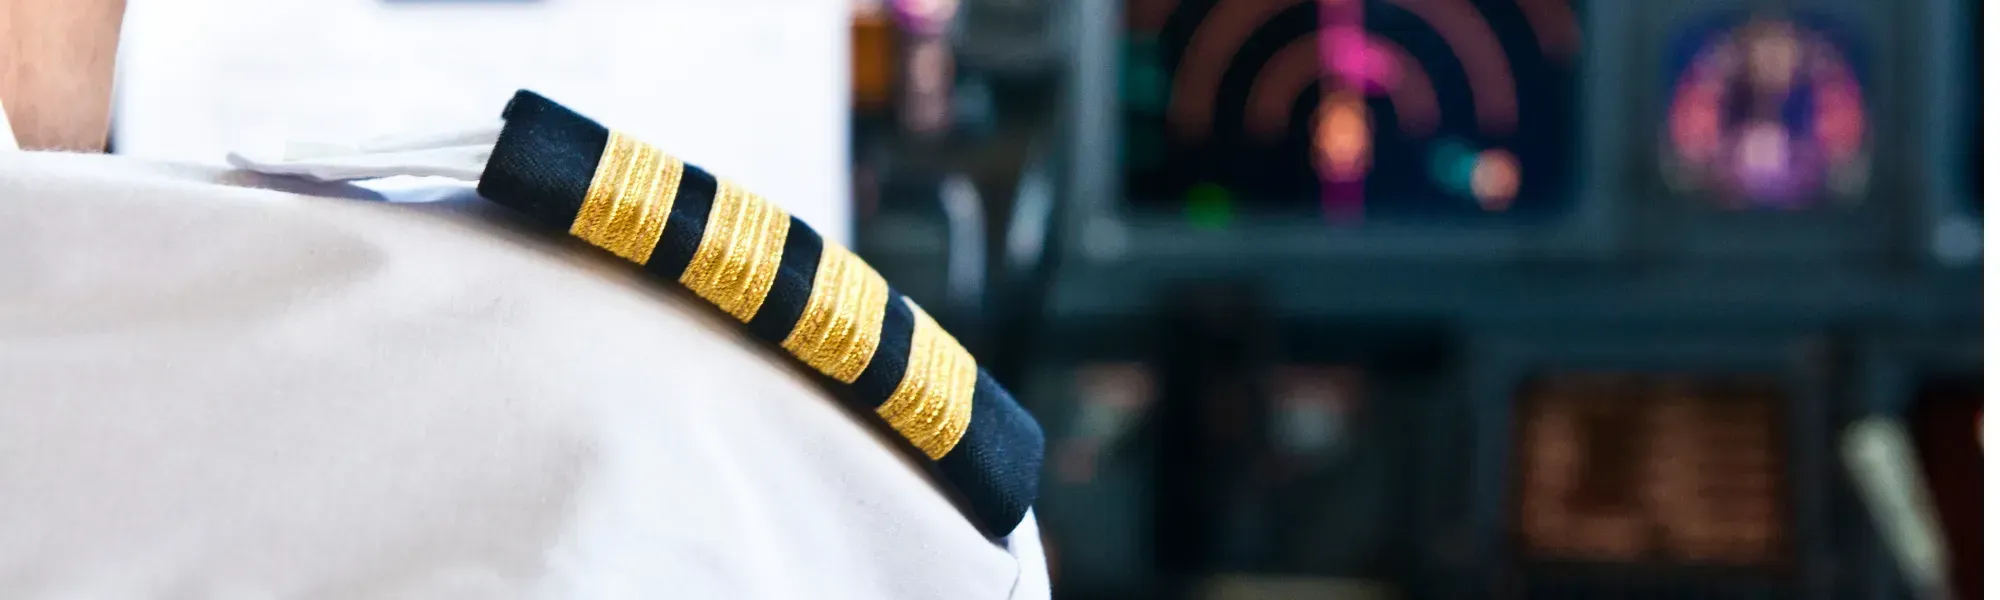 Pilot Jobs - First Officer Jobs - Captain Jobs - Airline Pilot Jobs - GOOSE Recruitment